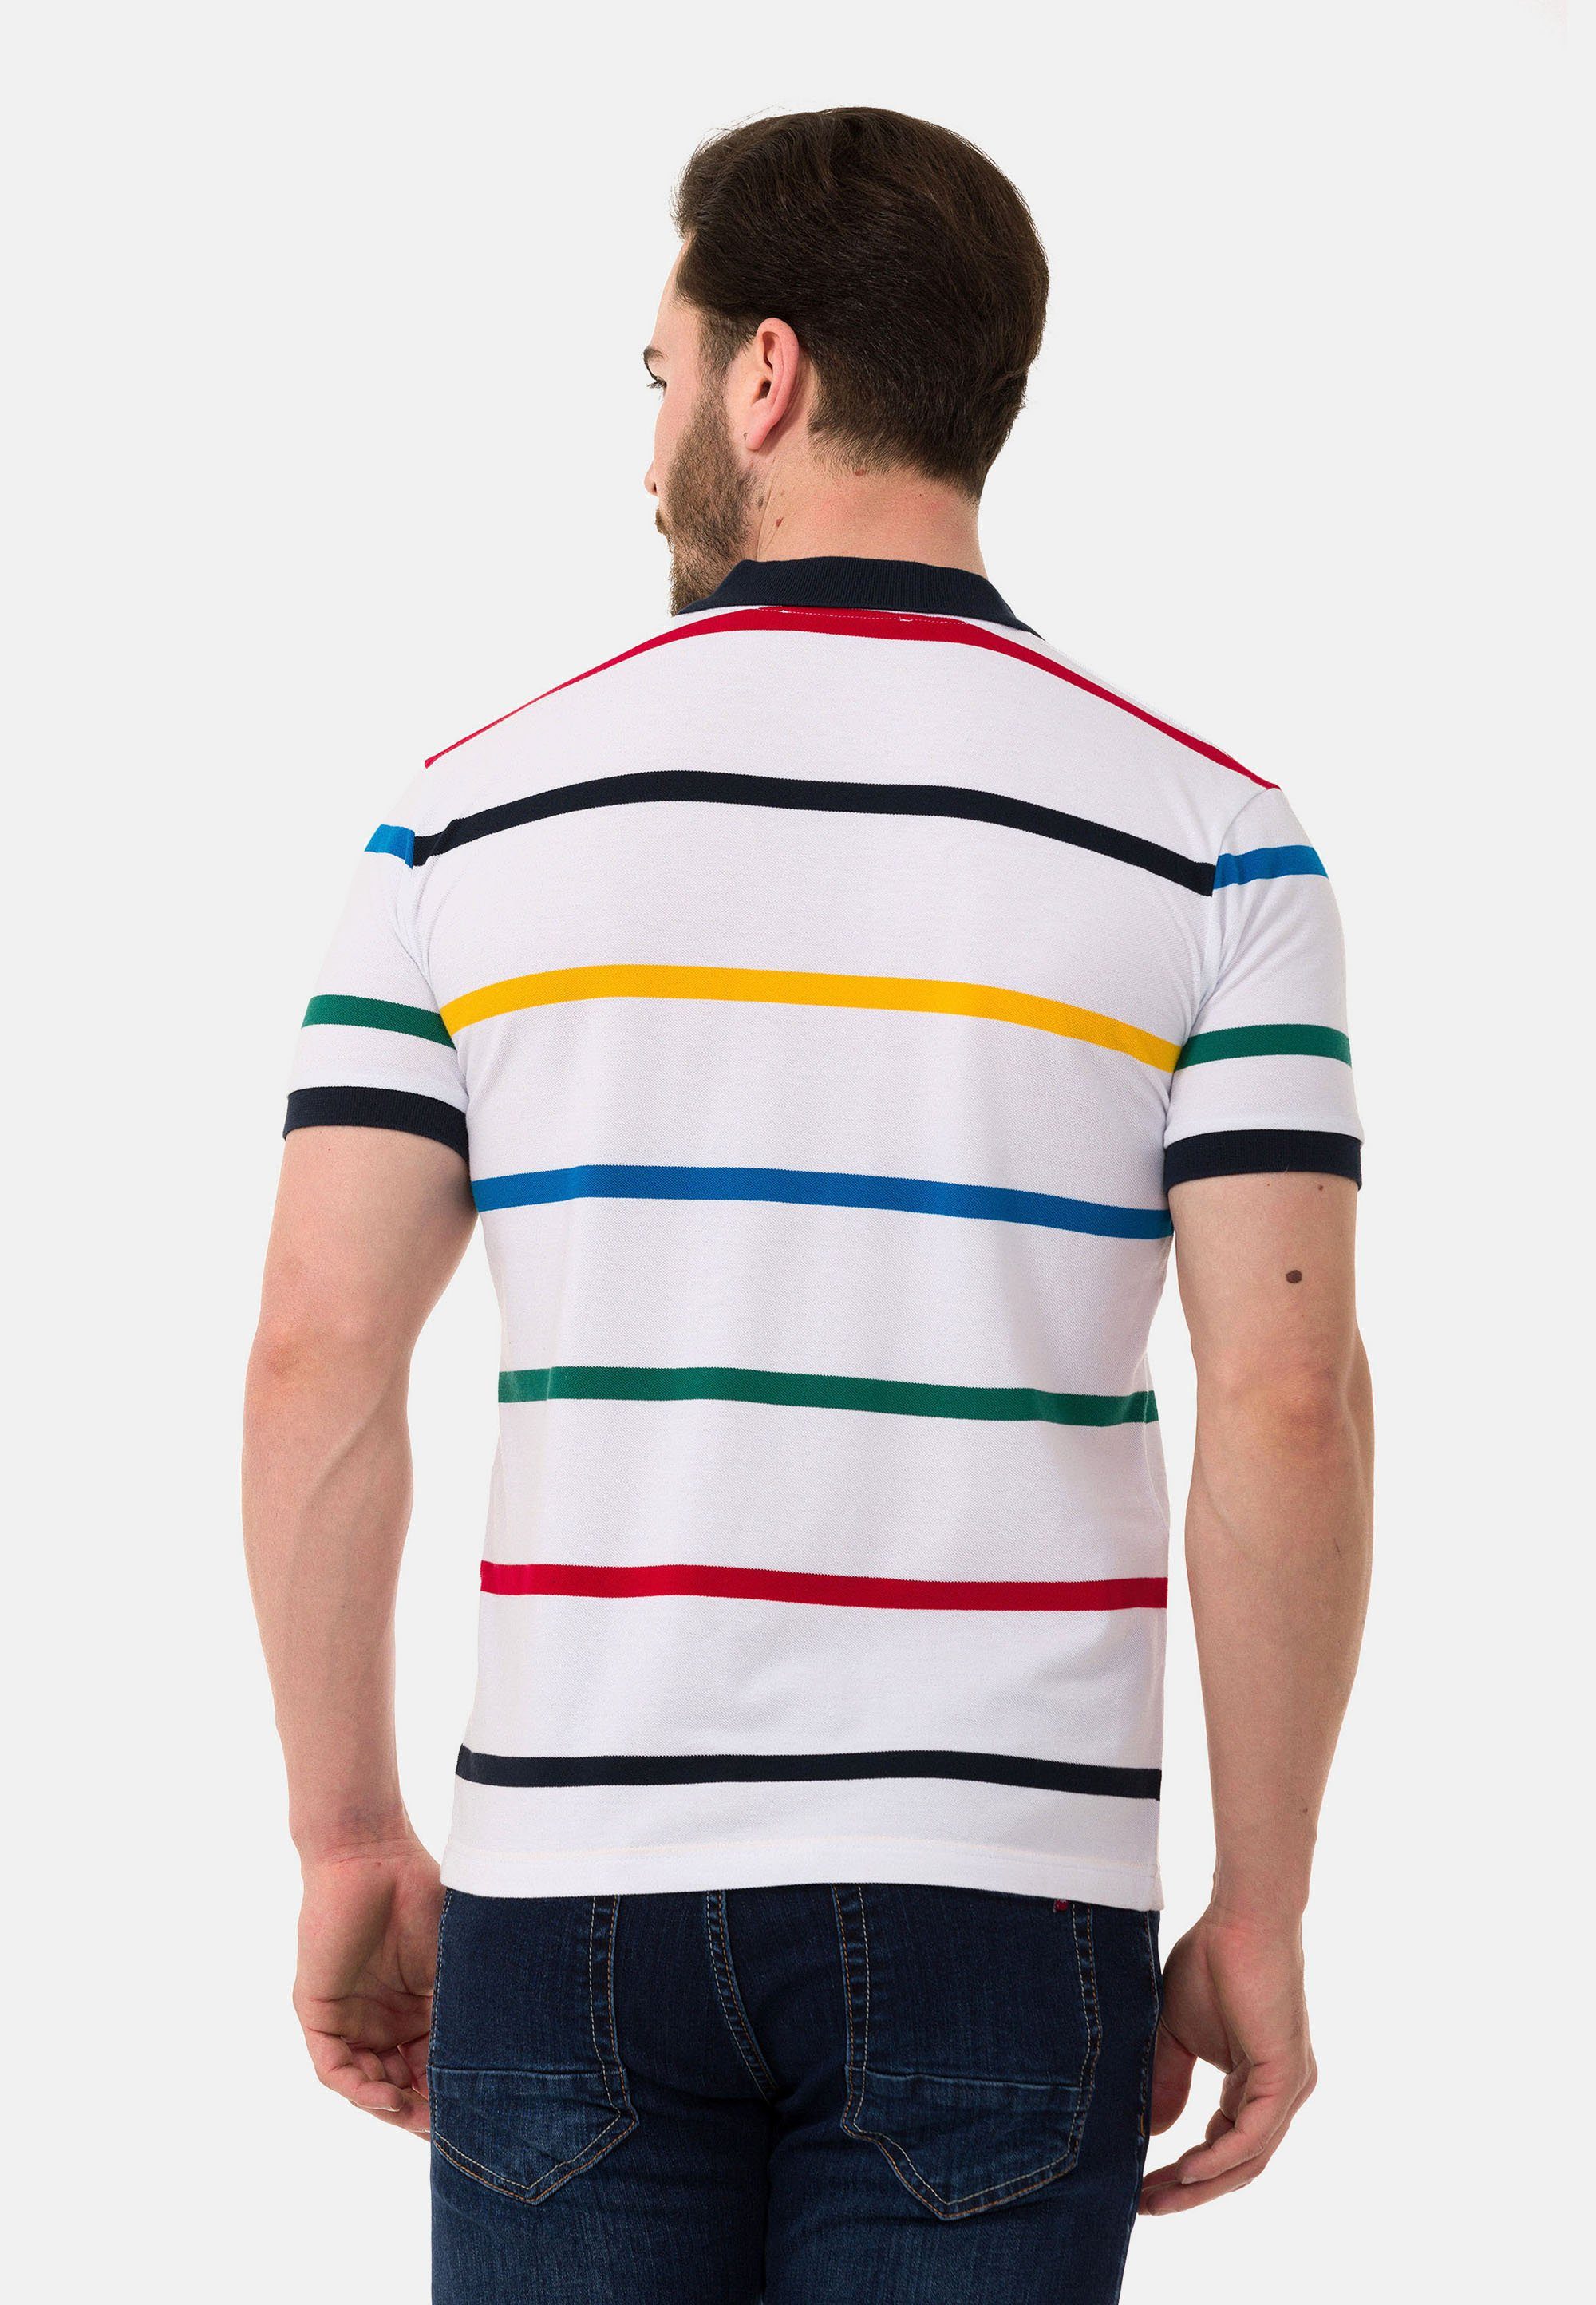 mit Cipo Poloshirt & weiß farbenfrohem Streifen-Design Baxx